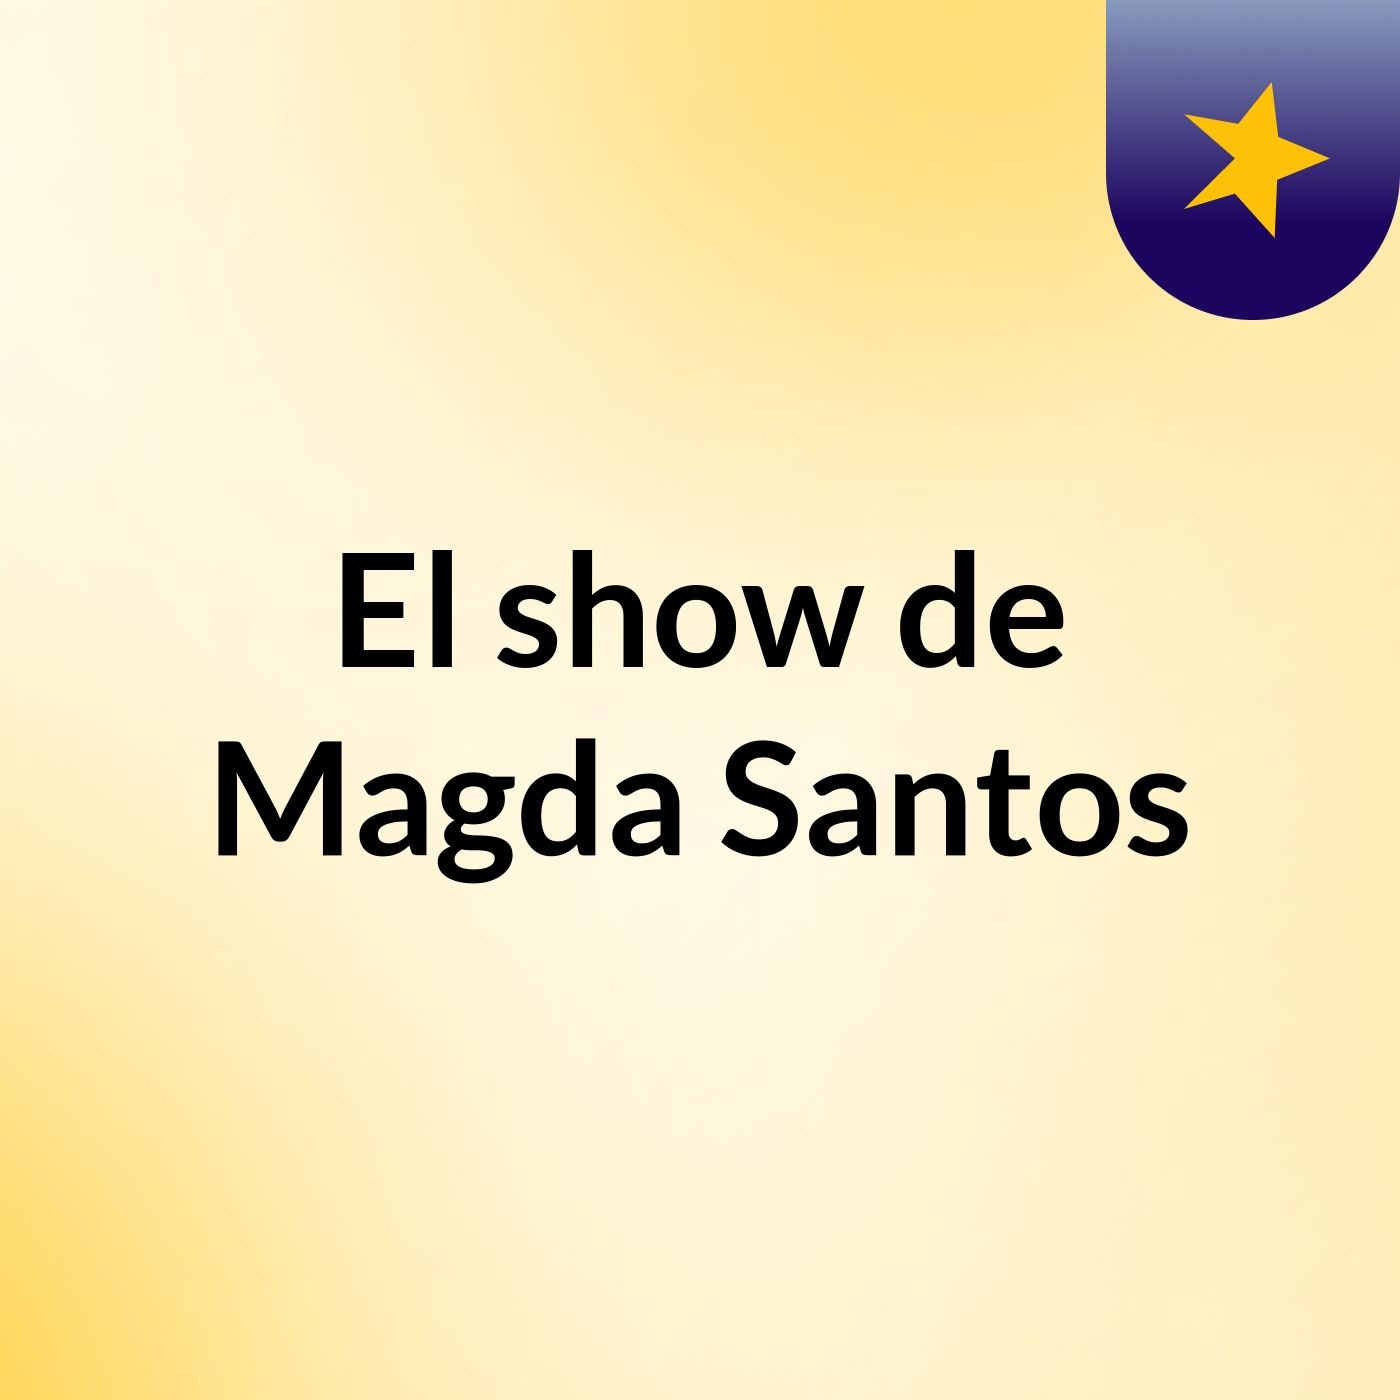 El show de Magda Santos